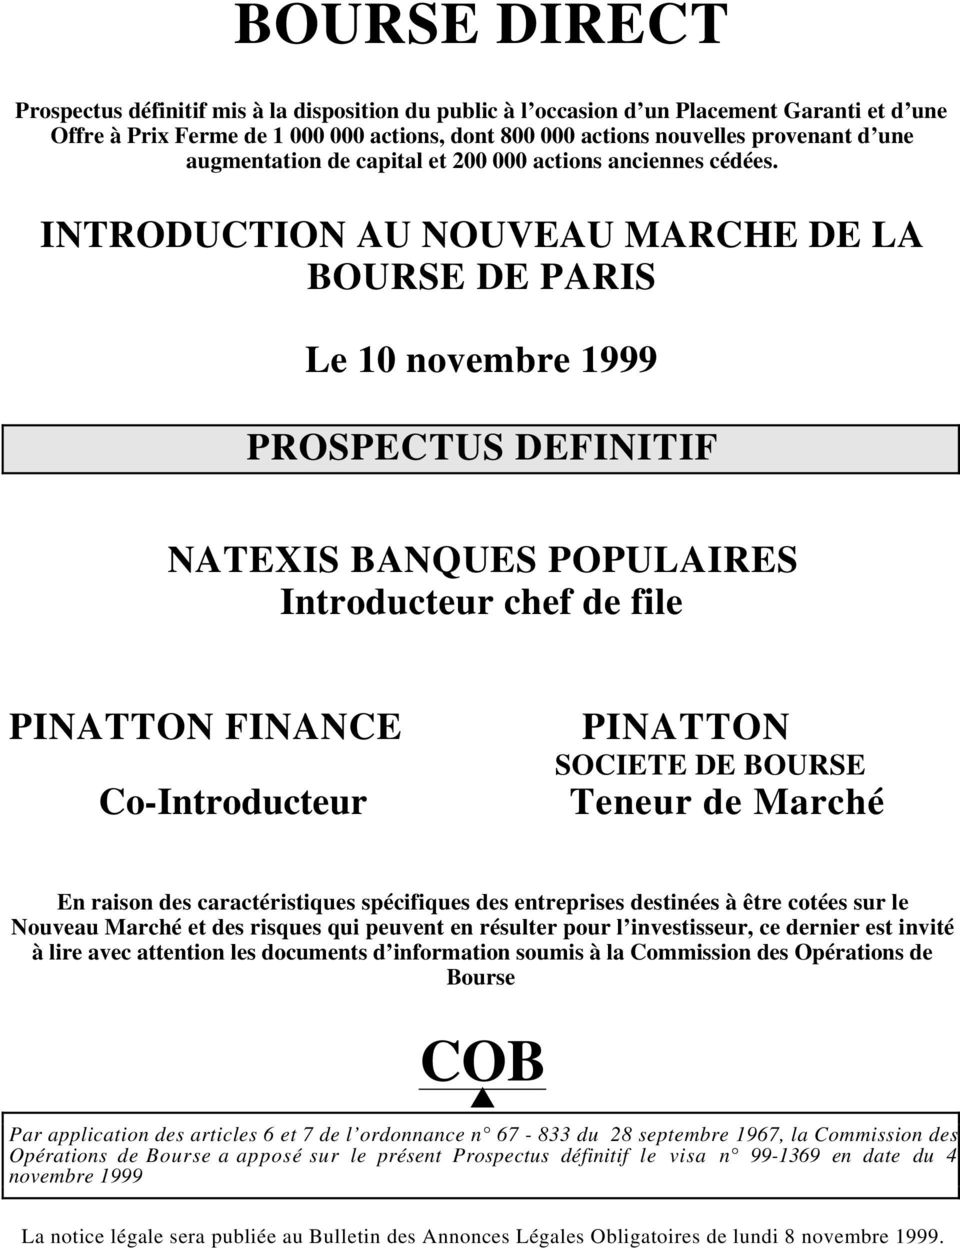 INTRODUCTION AU NOUVEAU MARCHE DE LA BOURSE DE PARIS Le 10 novembre 1999 PROSPECTUS DEFINITIF NATEXIS BANQUES POPULAIRES Introducteur chef de file PINATTON FINANCE Co-Introducteur PINATTON SOCIETE DE